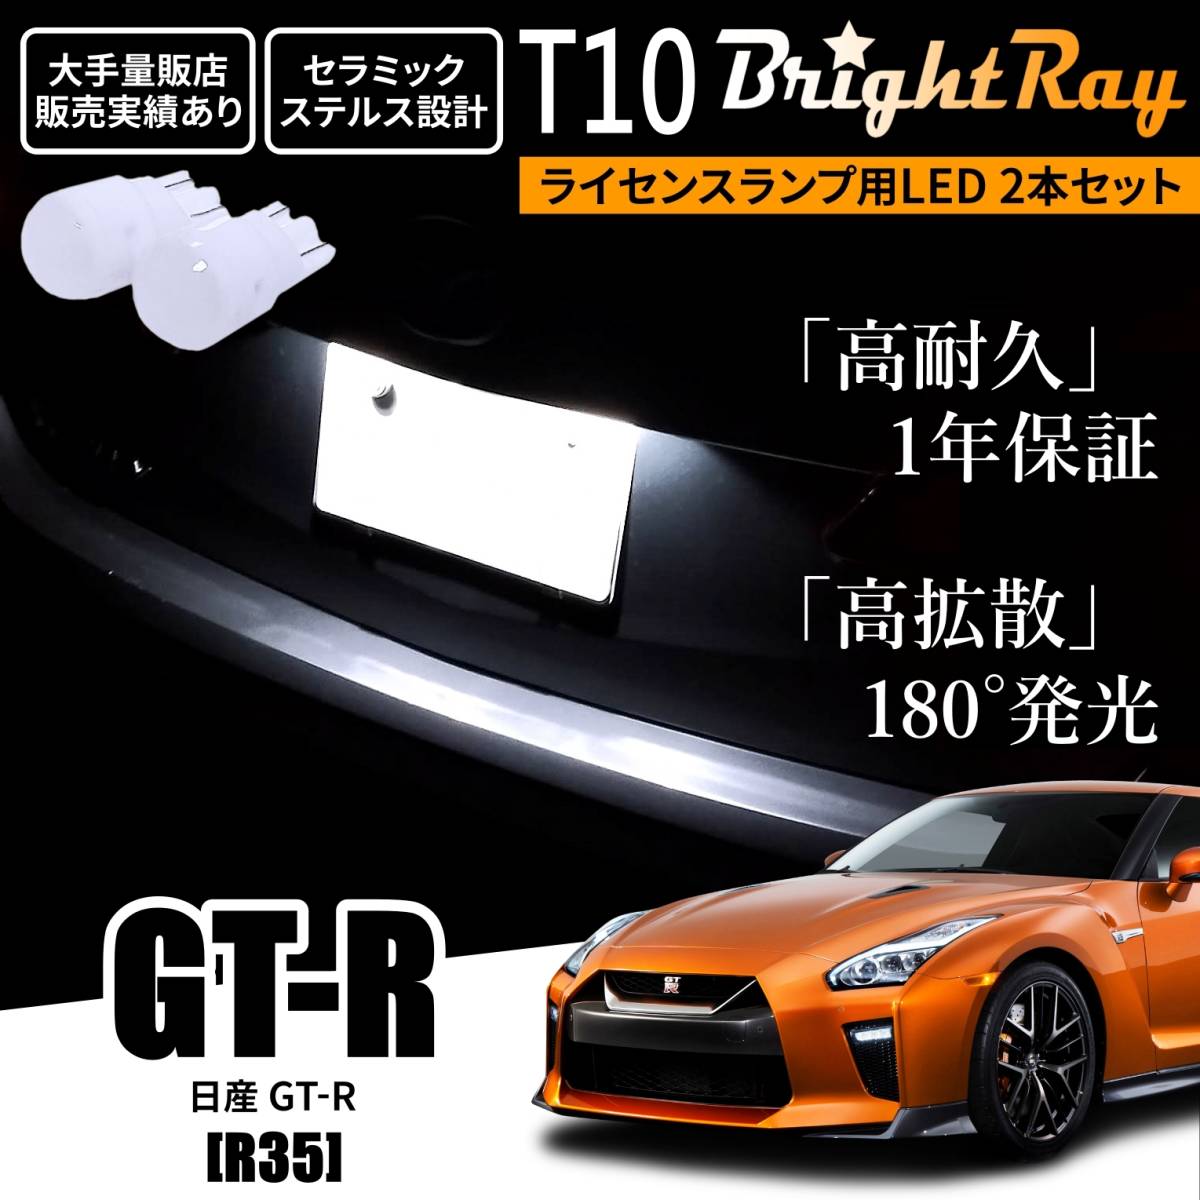 送料無料 日産 GT-R GTR R35 BrightRay T10 LED バルブ 1年保証 ナンバー灯 ライセンスランプ ウェッジ球 ホワイト ルームランプにもの画像1